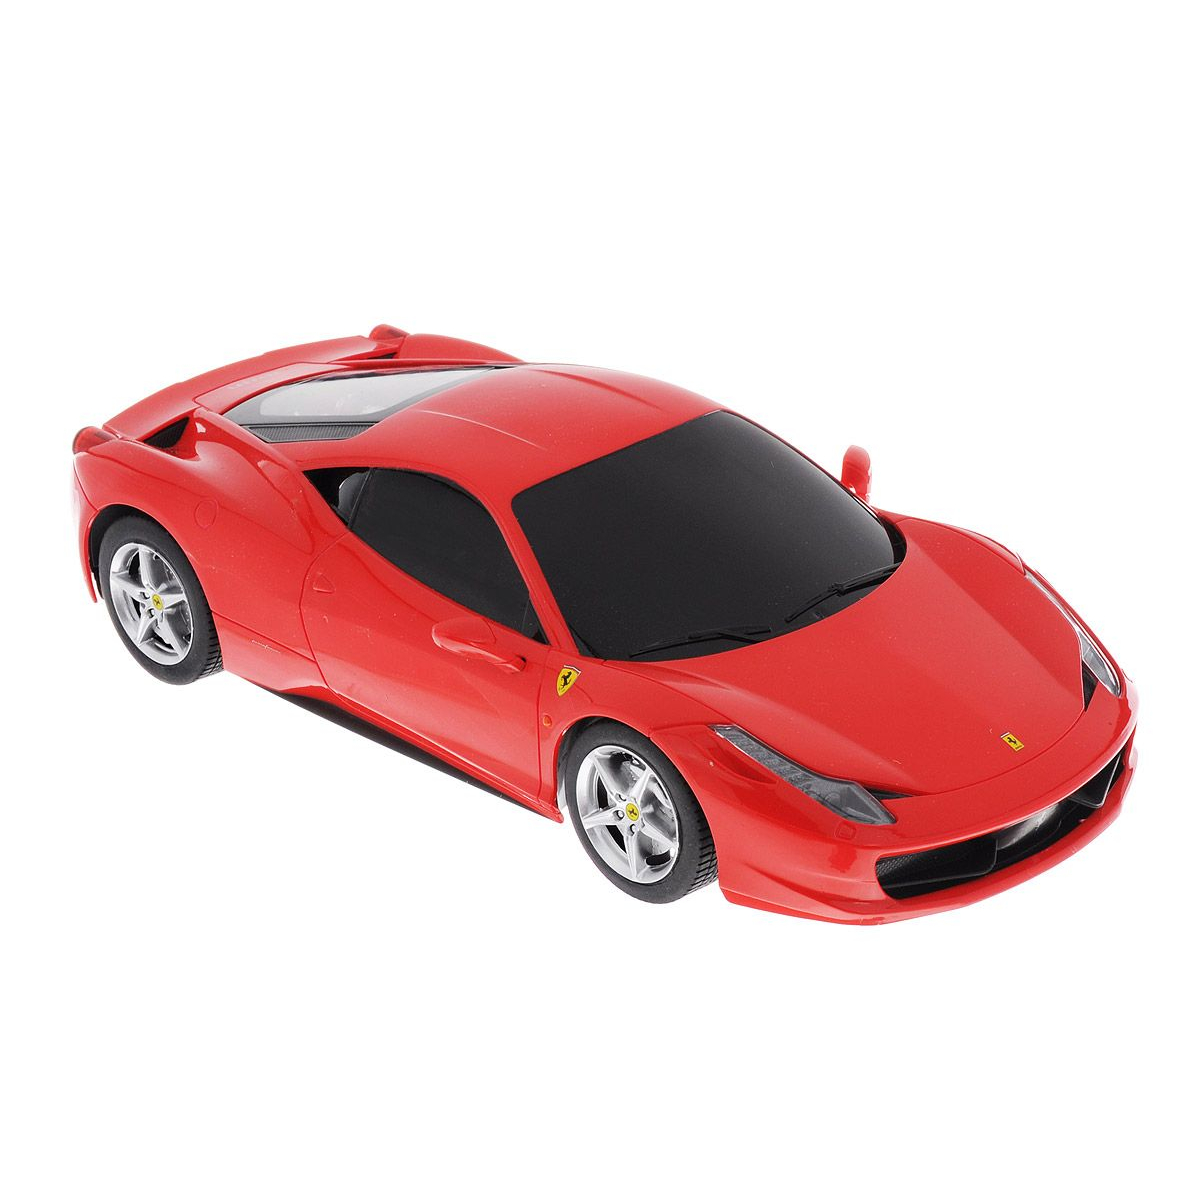 Красная машинка 1. Ferrari 458 1/18. Toys Toys автомобиль Ferrari 458 Challenge. Ferrari 458 Italia моделька. Игрушечные Тачки Феррари f430.